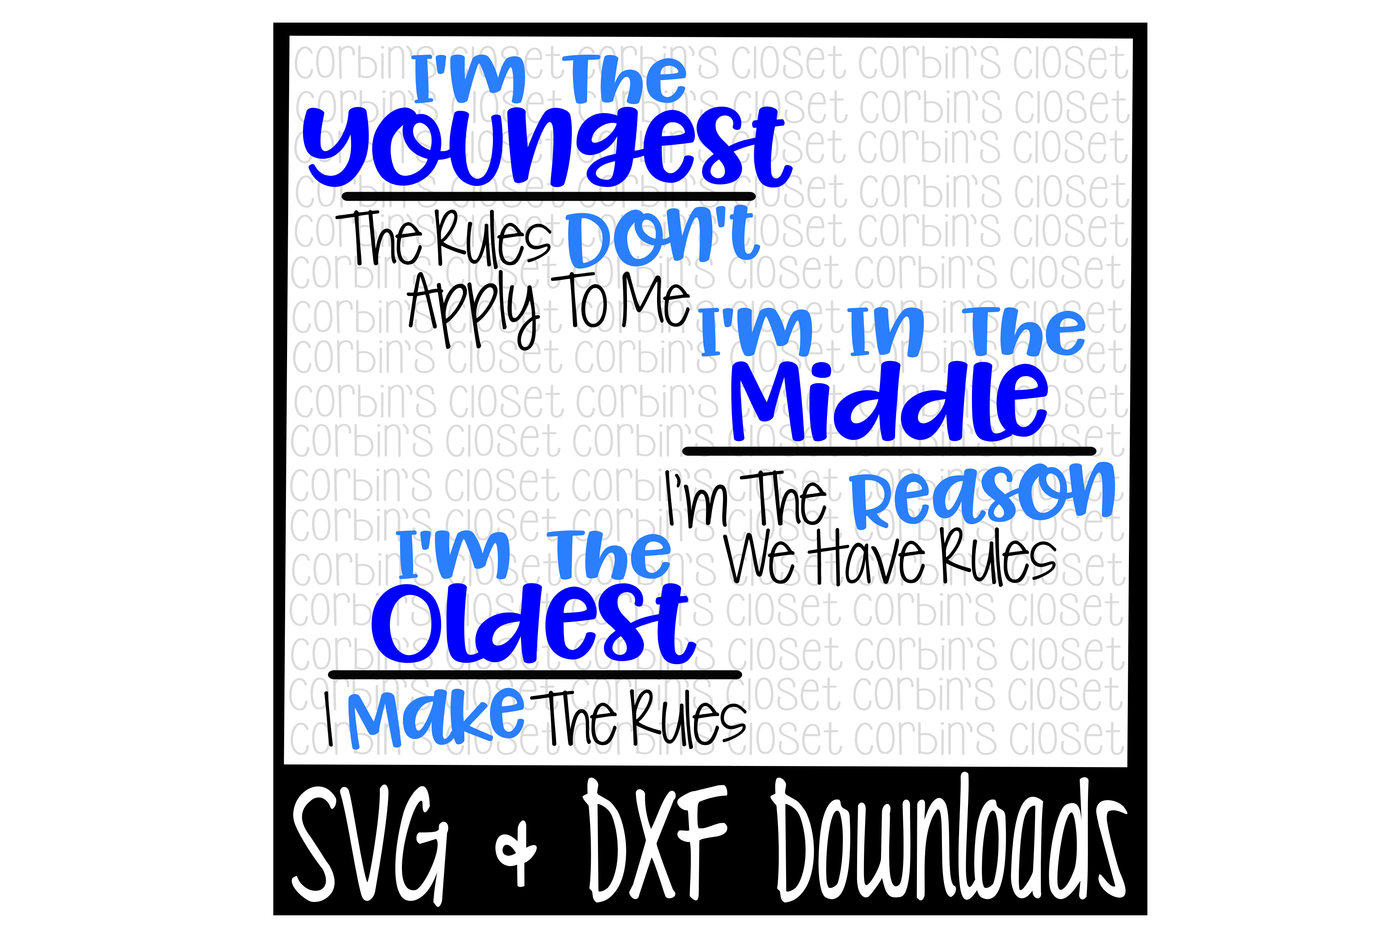 Free Free Oldest Child Svg 508 SVG PNG EPS DXF File